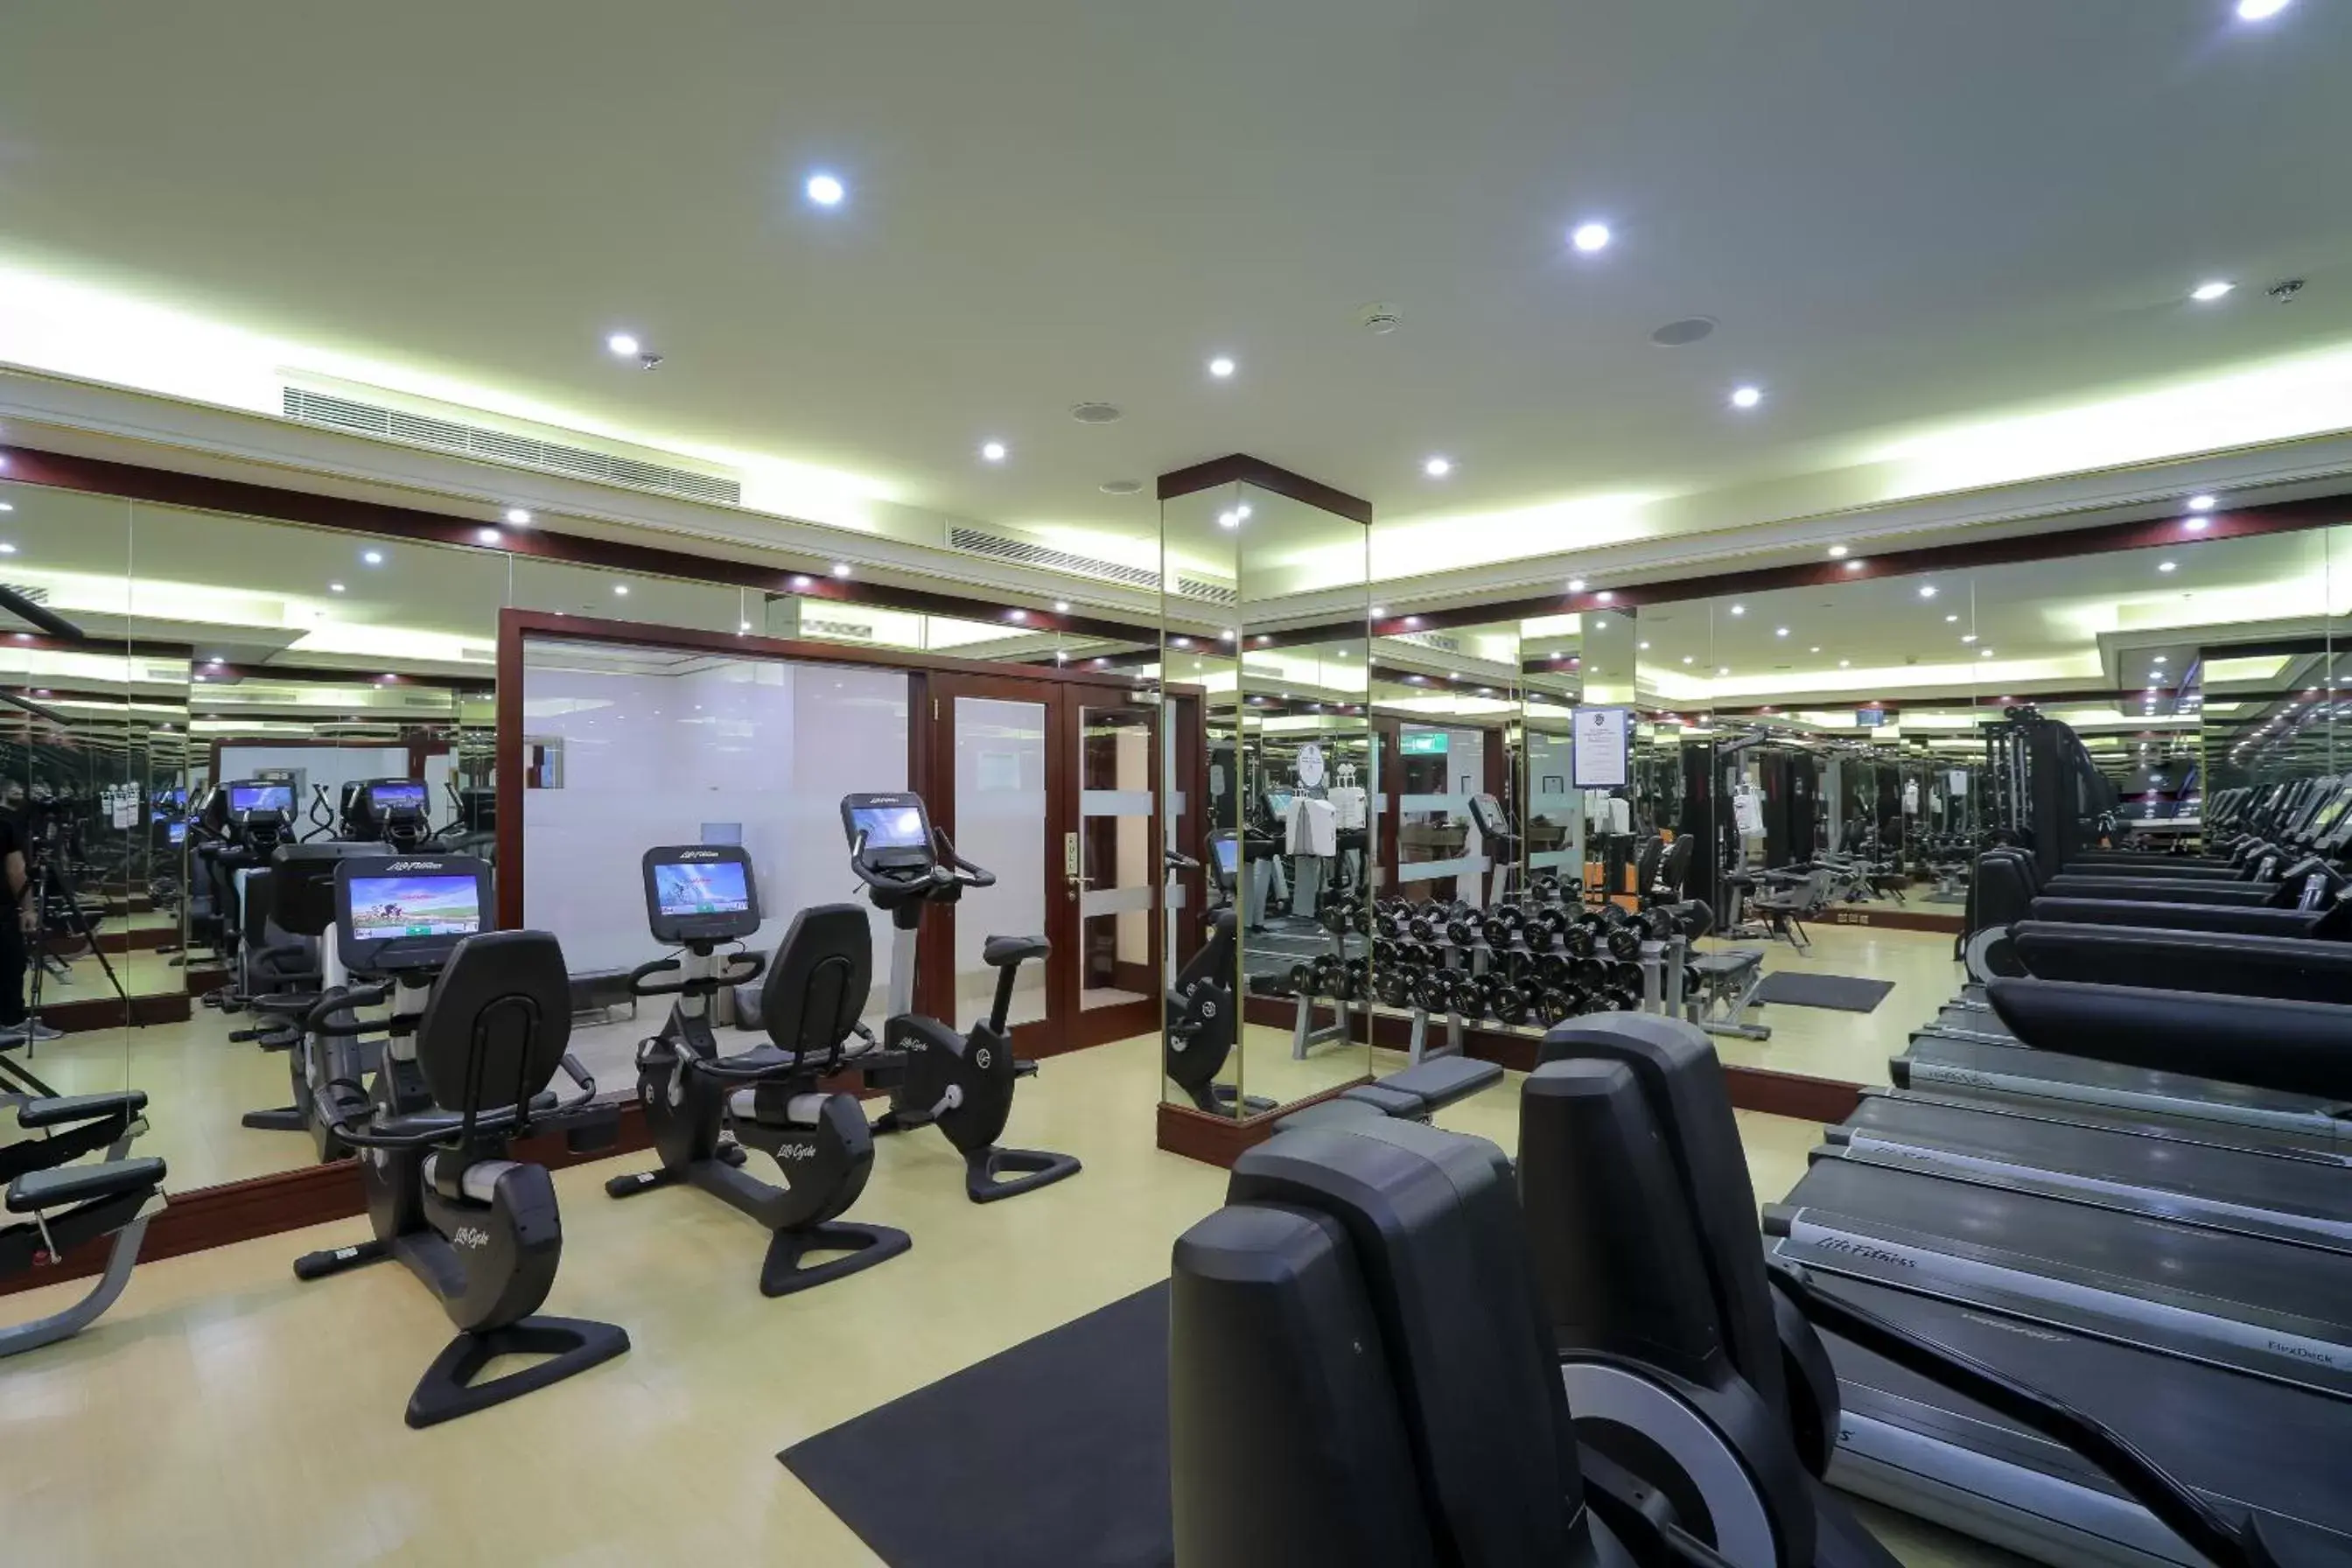 Fitness centre/facilities, Fitness Center/Facilities in Mövenpick Hotel City Star Jeddah